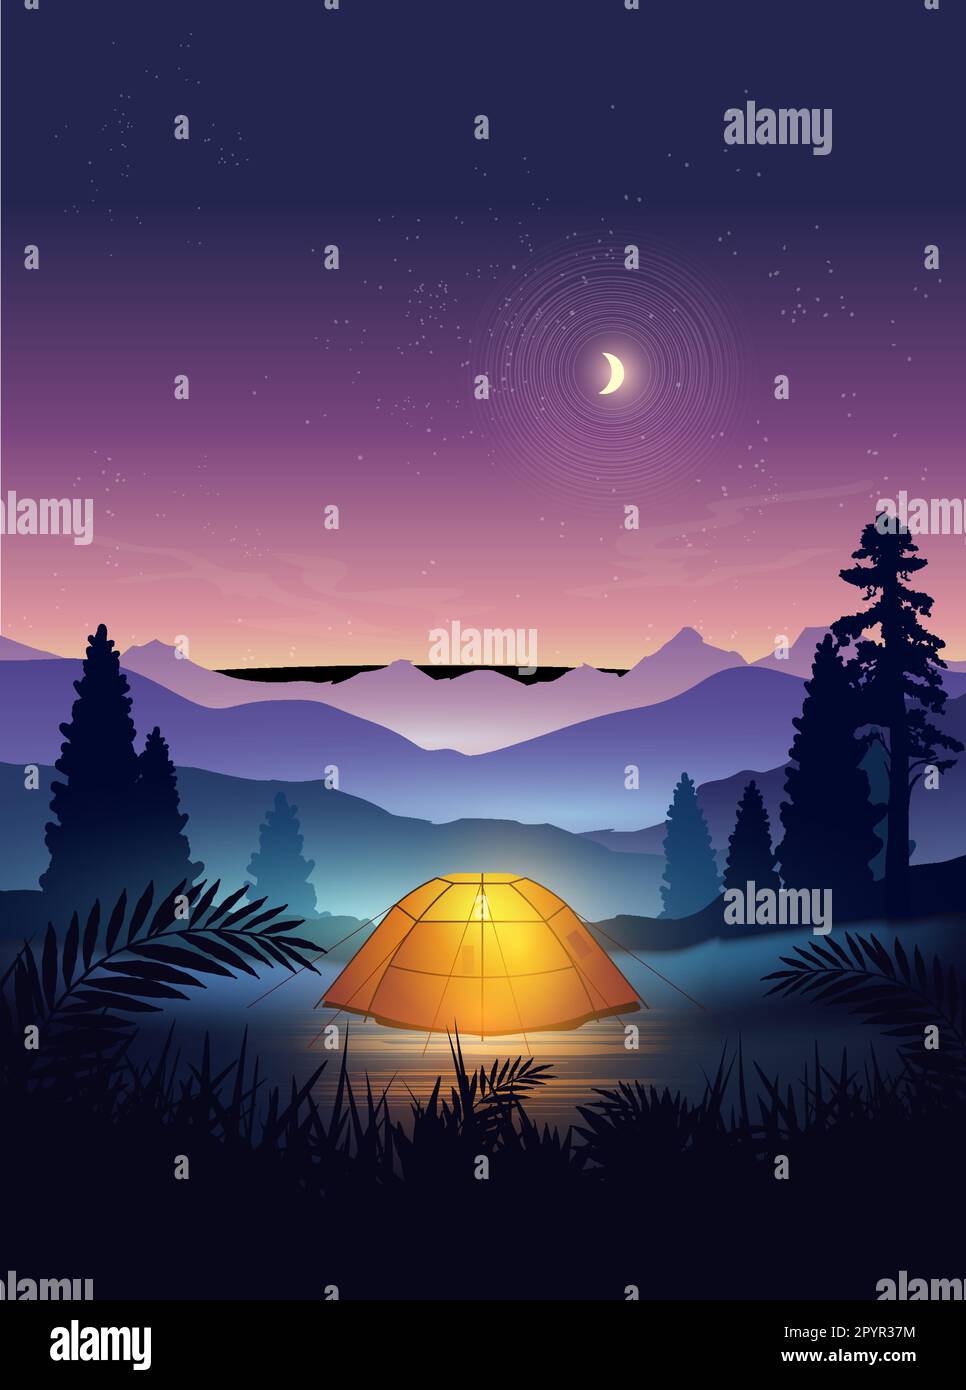 Una tienda de campaña montada en un hermoso lugar de viaje, con montañas y árboles, al atardecer con la luna y las estrellas brillando en el cielo nocturno. Vector i Ilustración del Vector